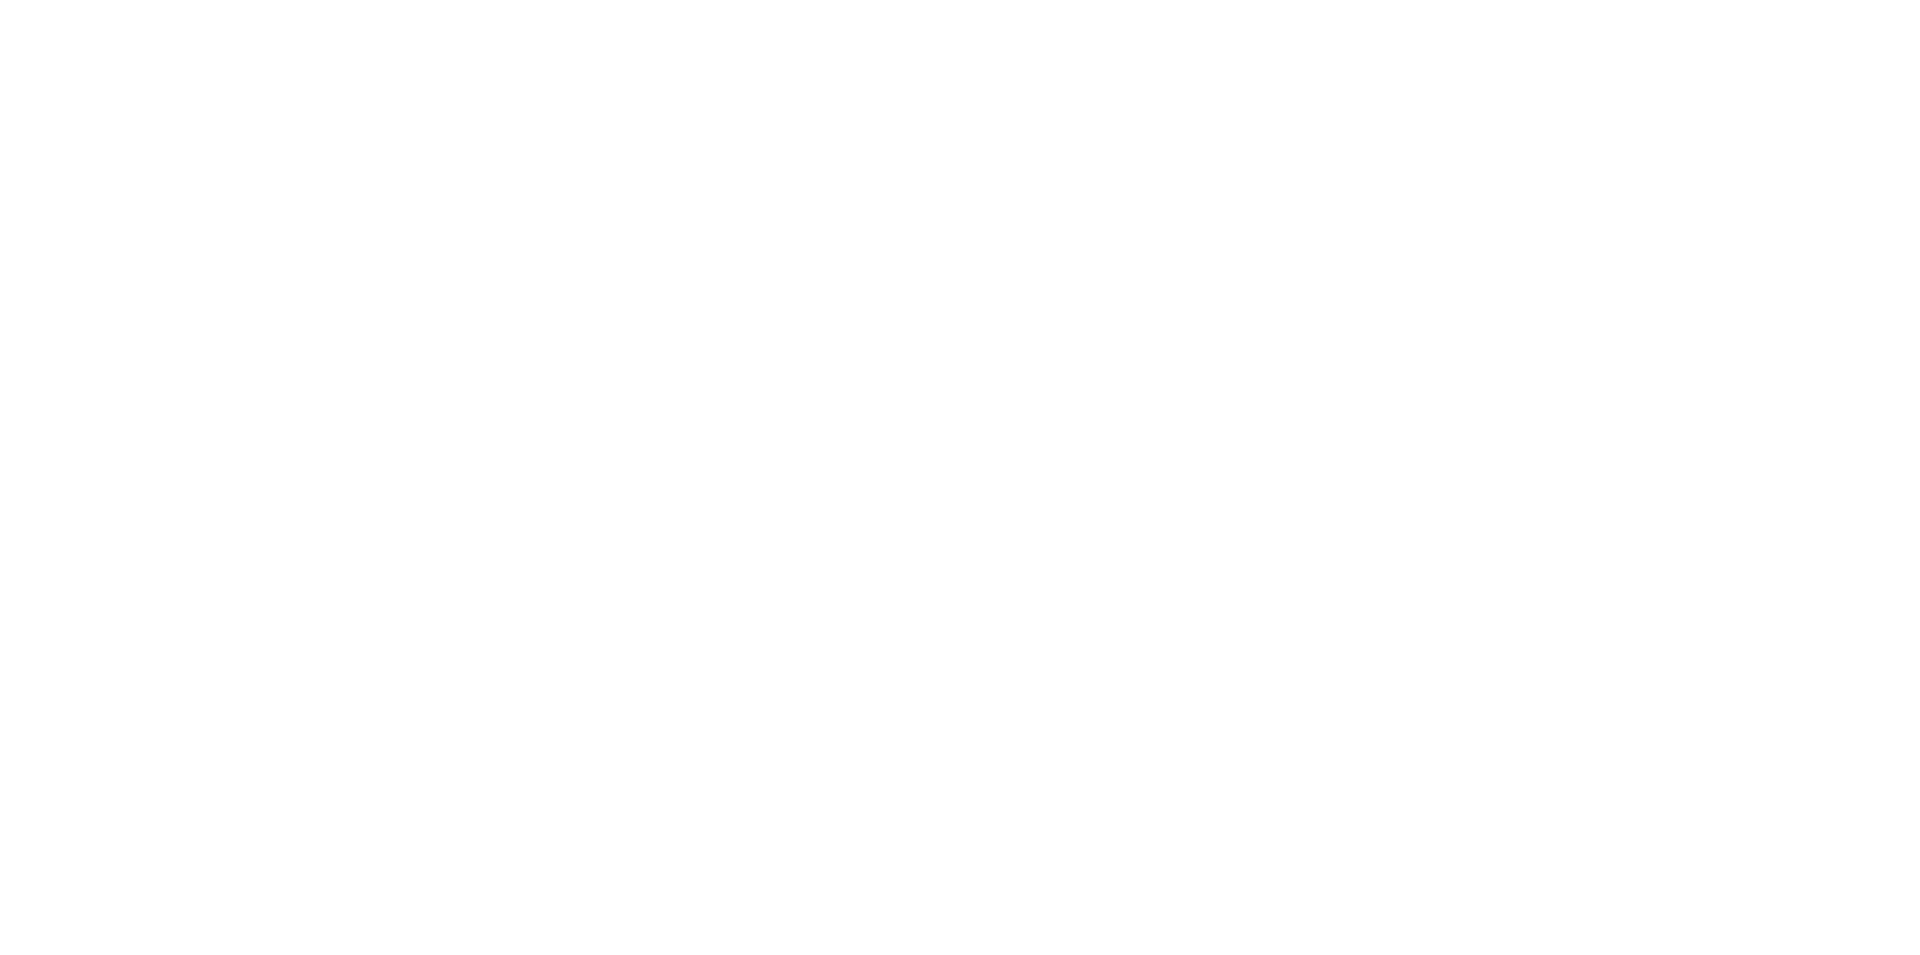 KATE MOSS for LONGCHAMP